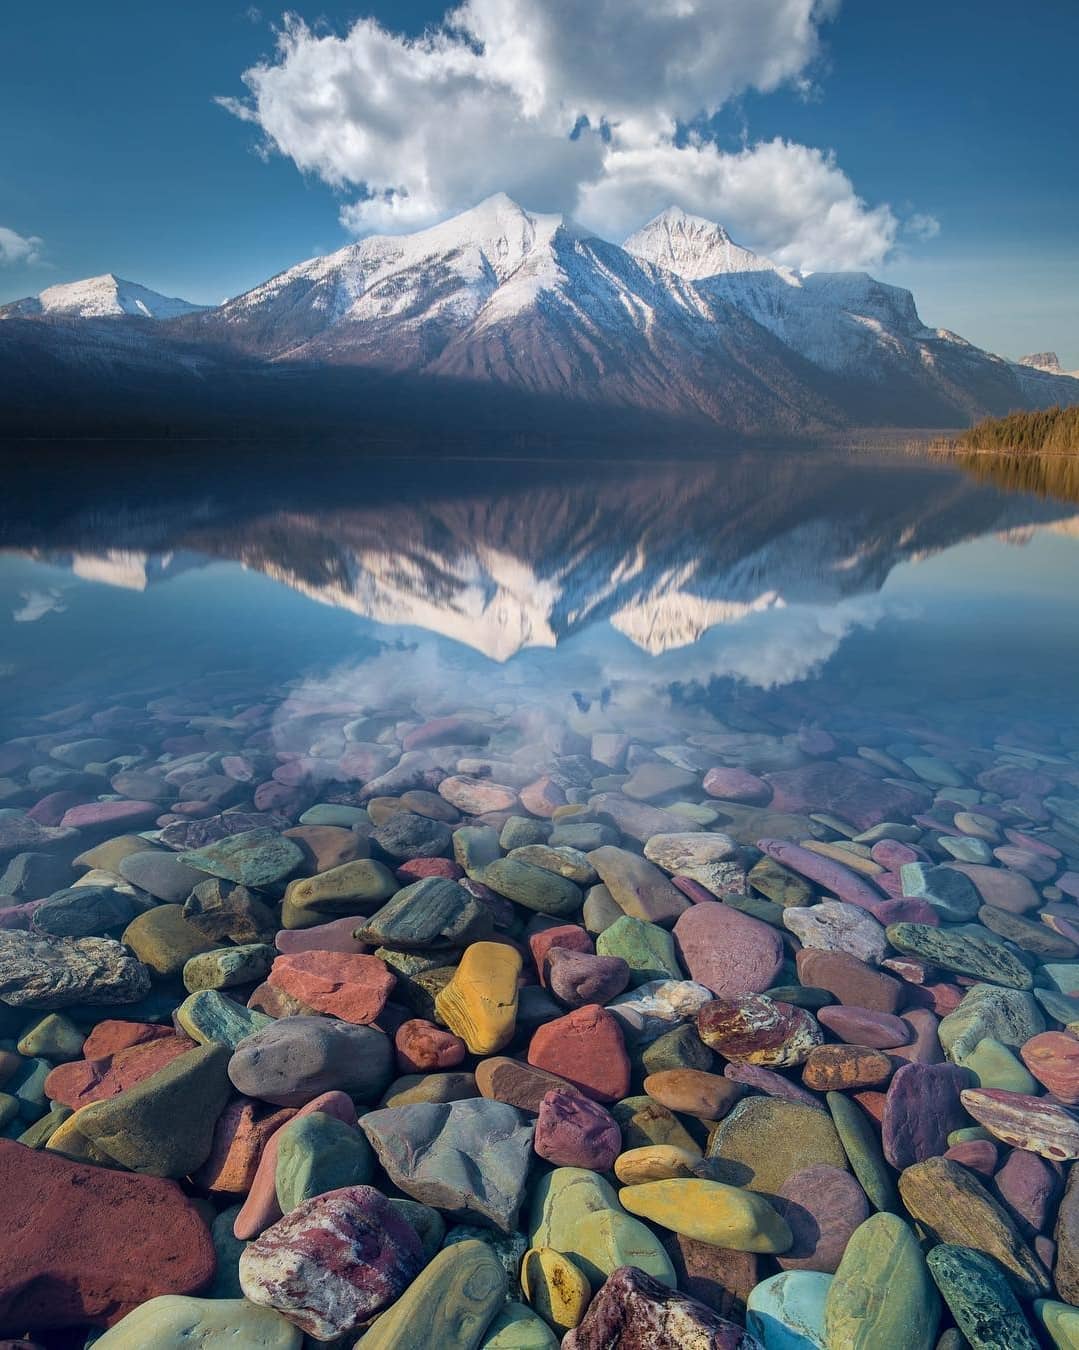 摄影欣赏:神奇的河流湖泊,倒映出五彩斑斓的世界